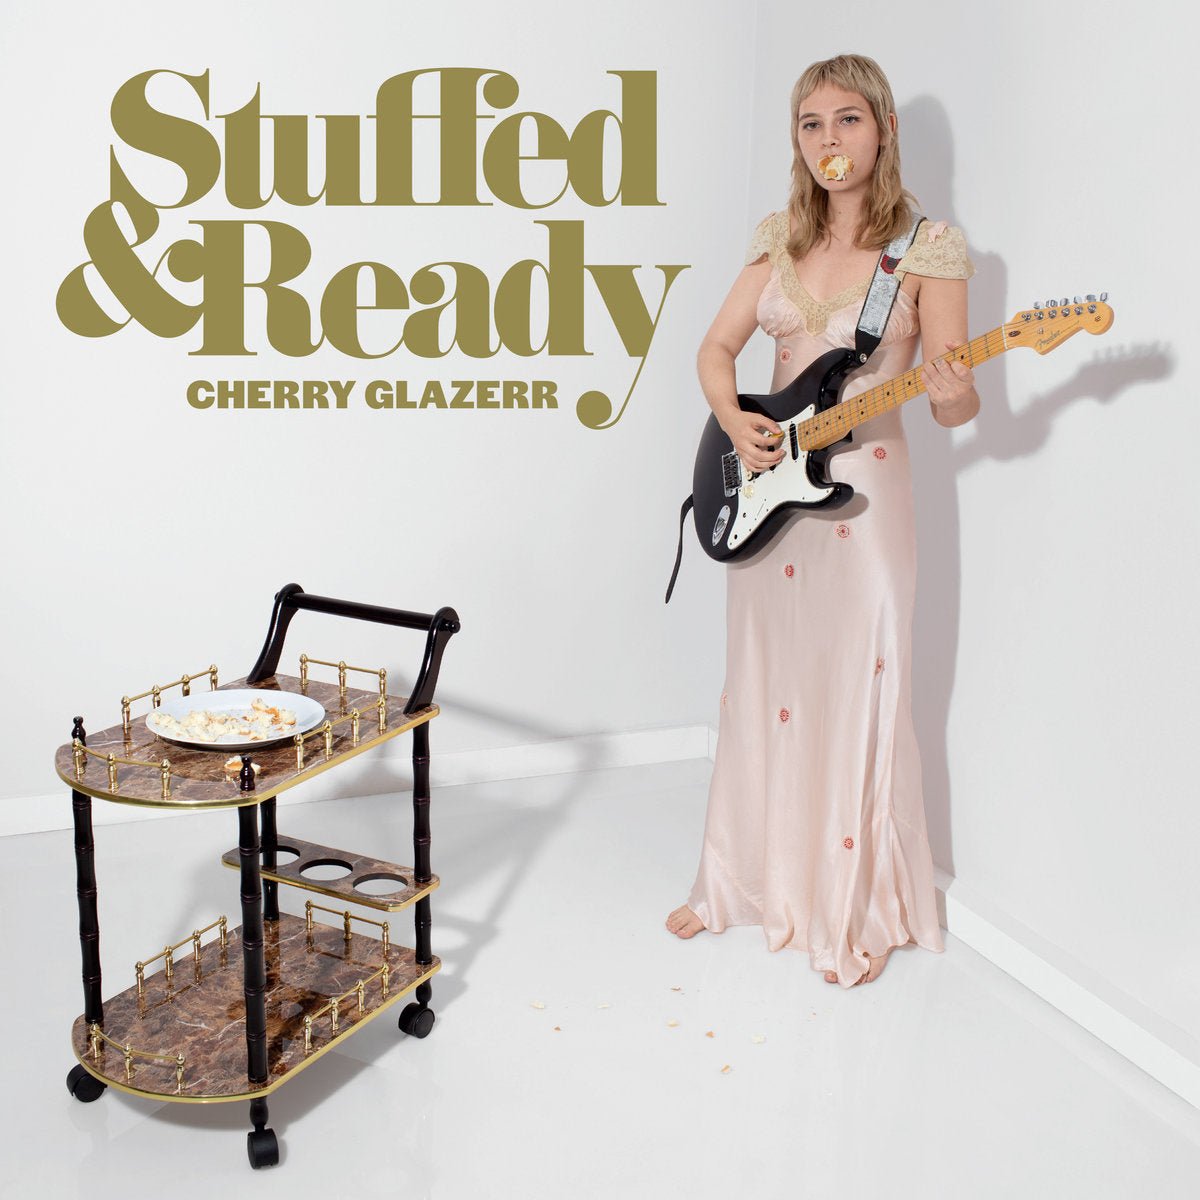 Cherry Glazerr - Stuffed & Ready LP - Vinyl - Secretly Canadian